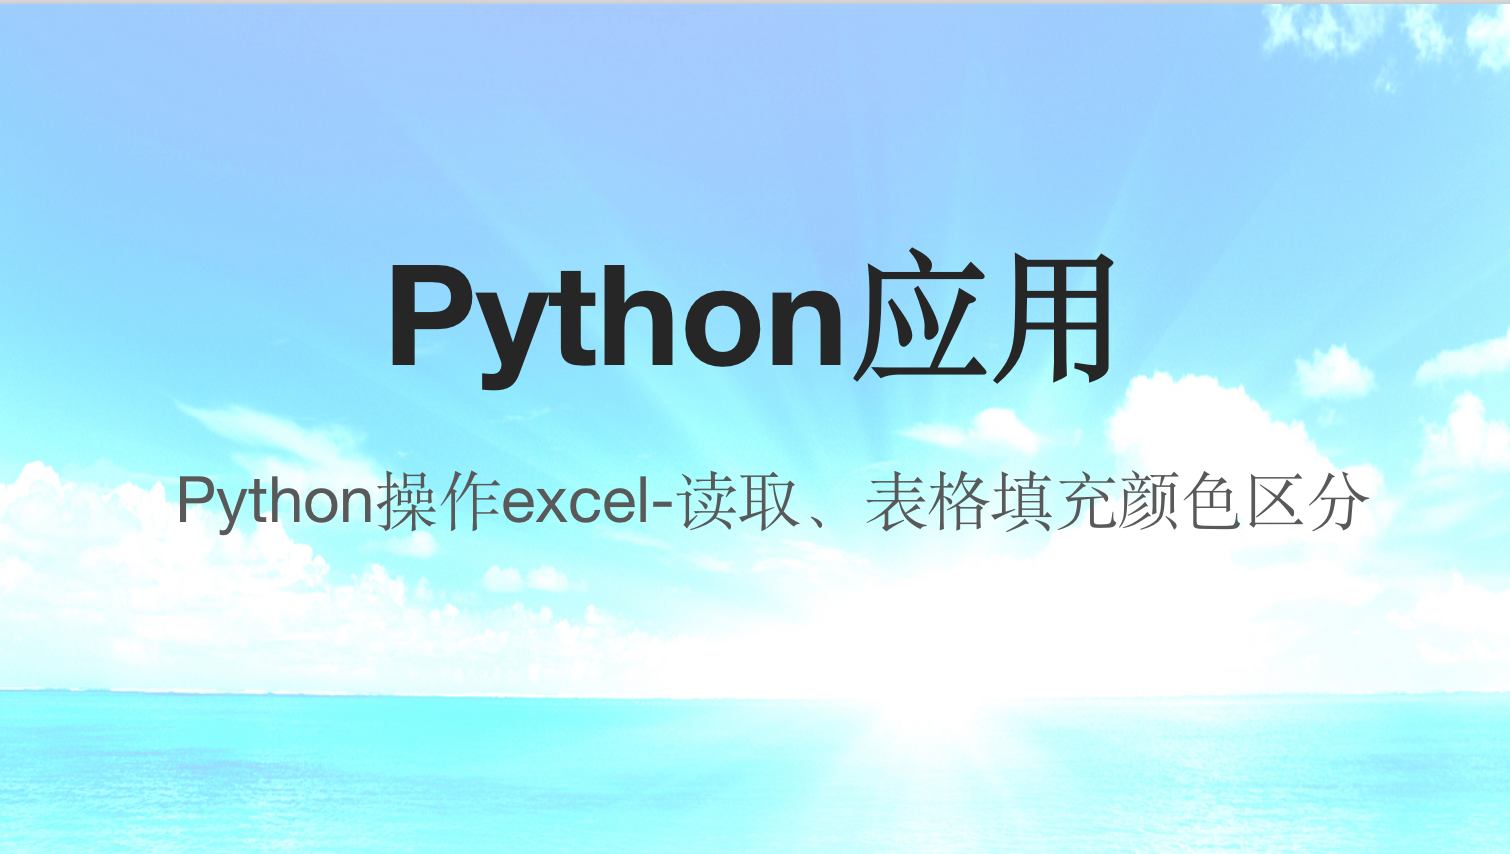 Python操作excel-读取、表格填充颜色区分